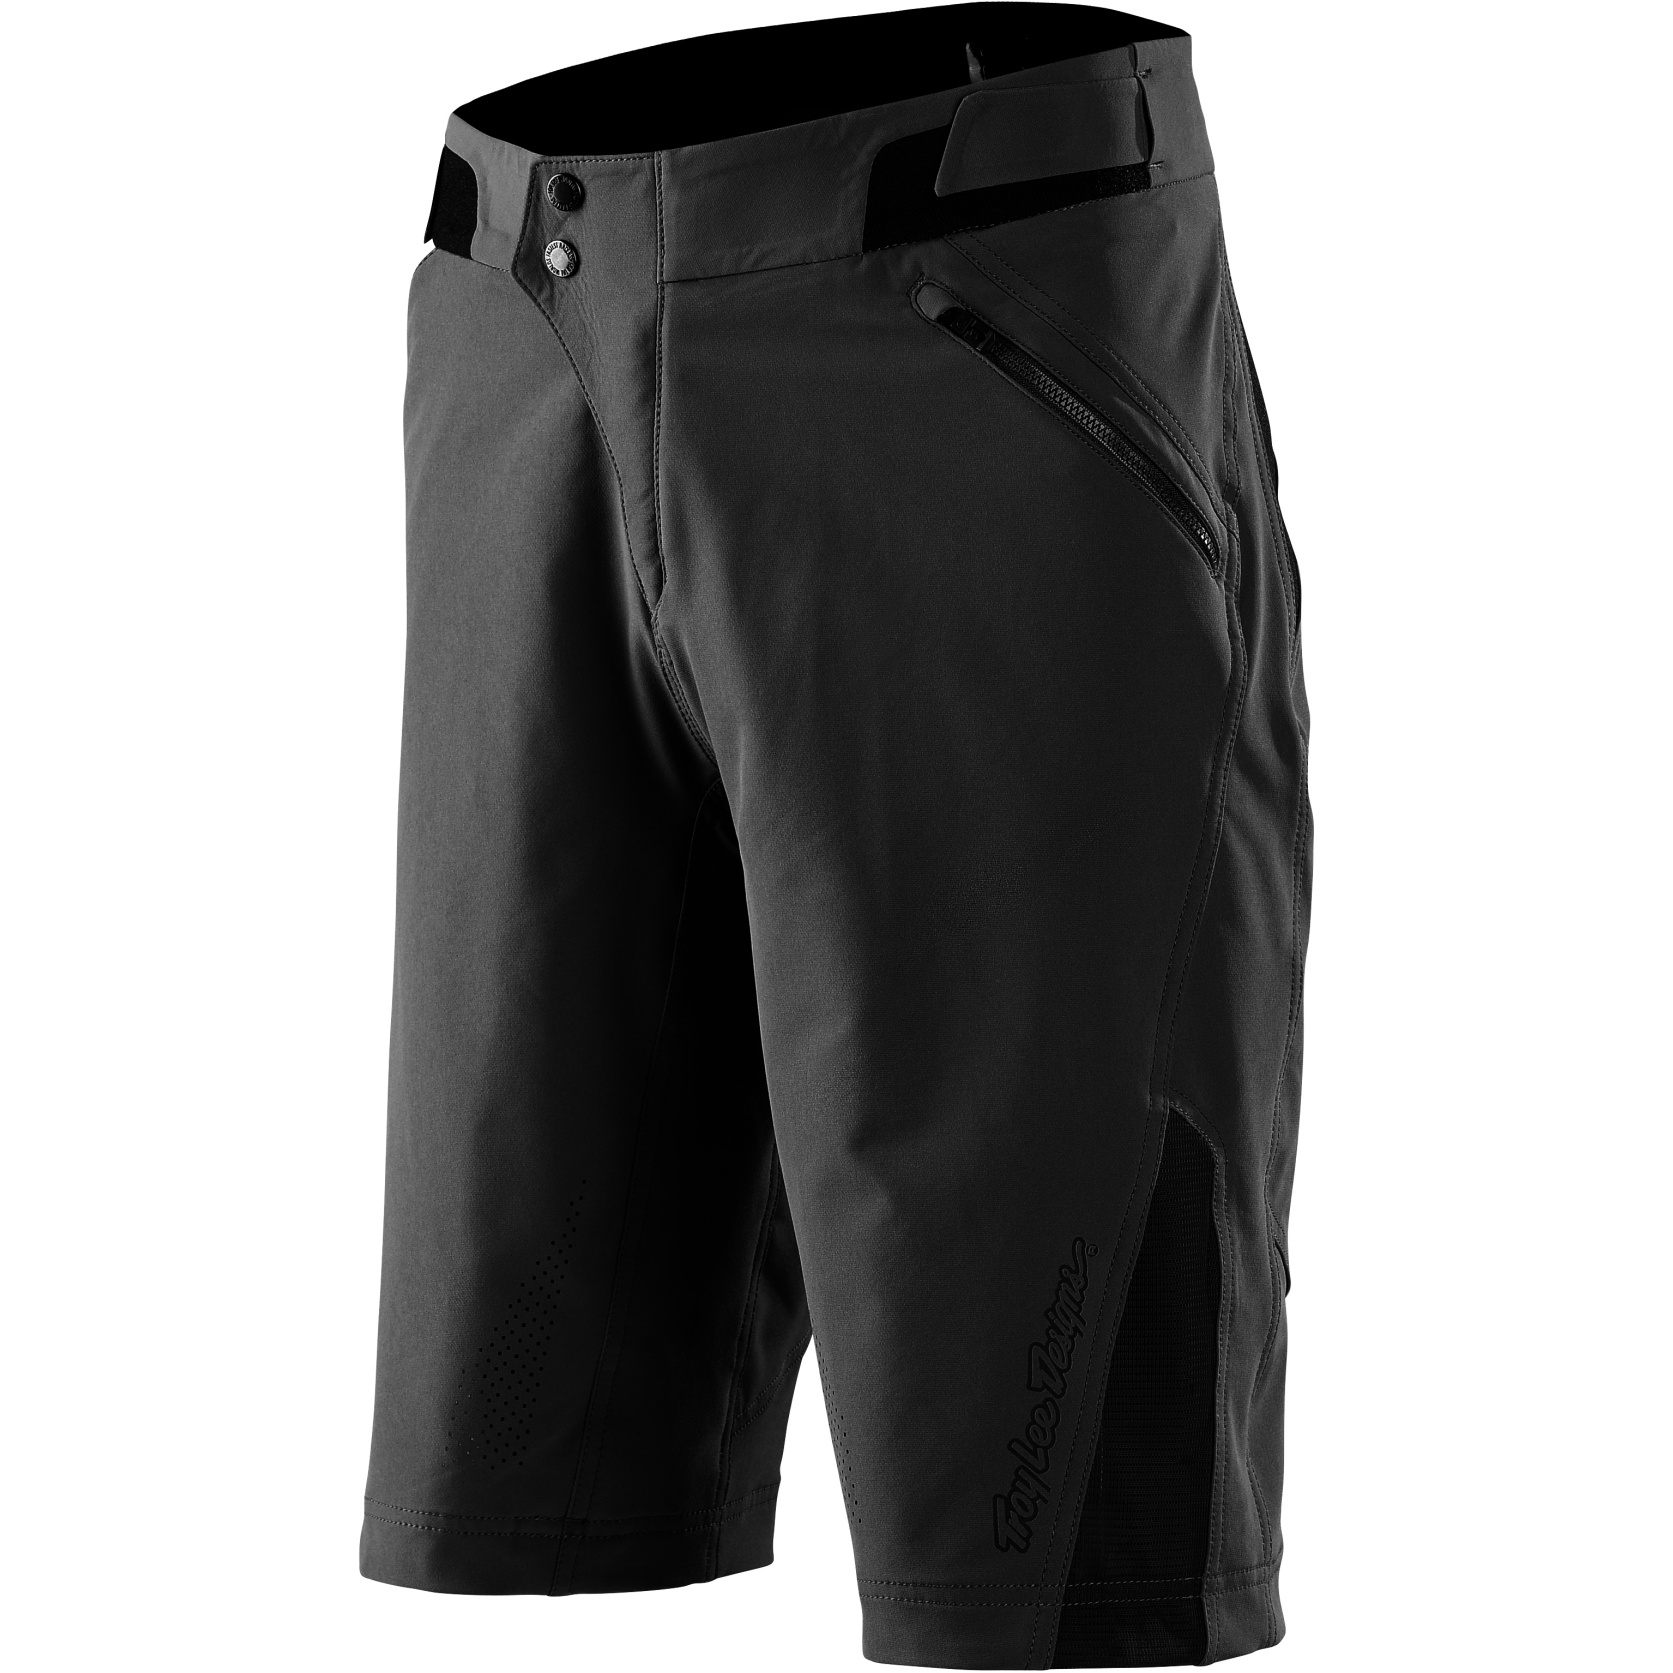 Produktbild von Troy Lee Designs Ruckus Shorts - Solid Black